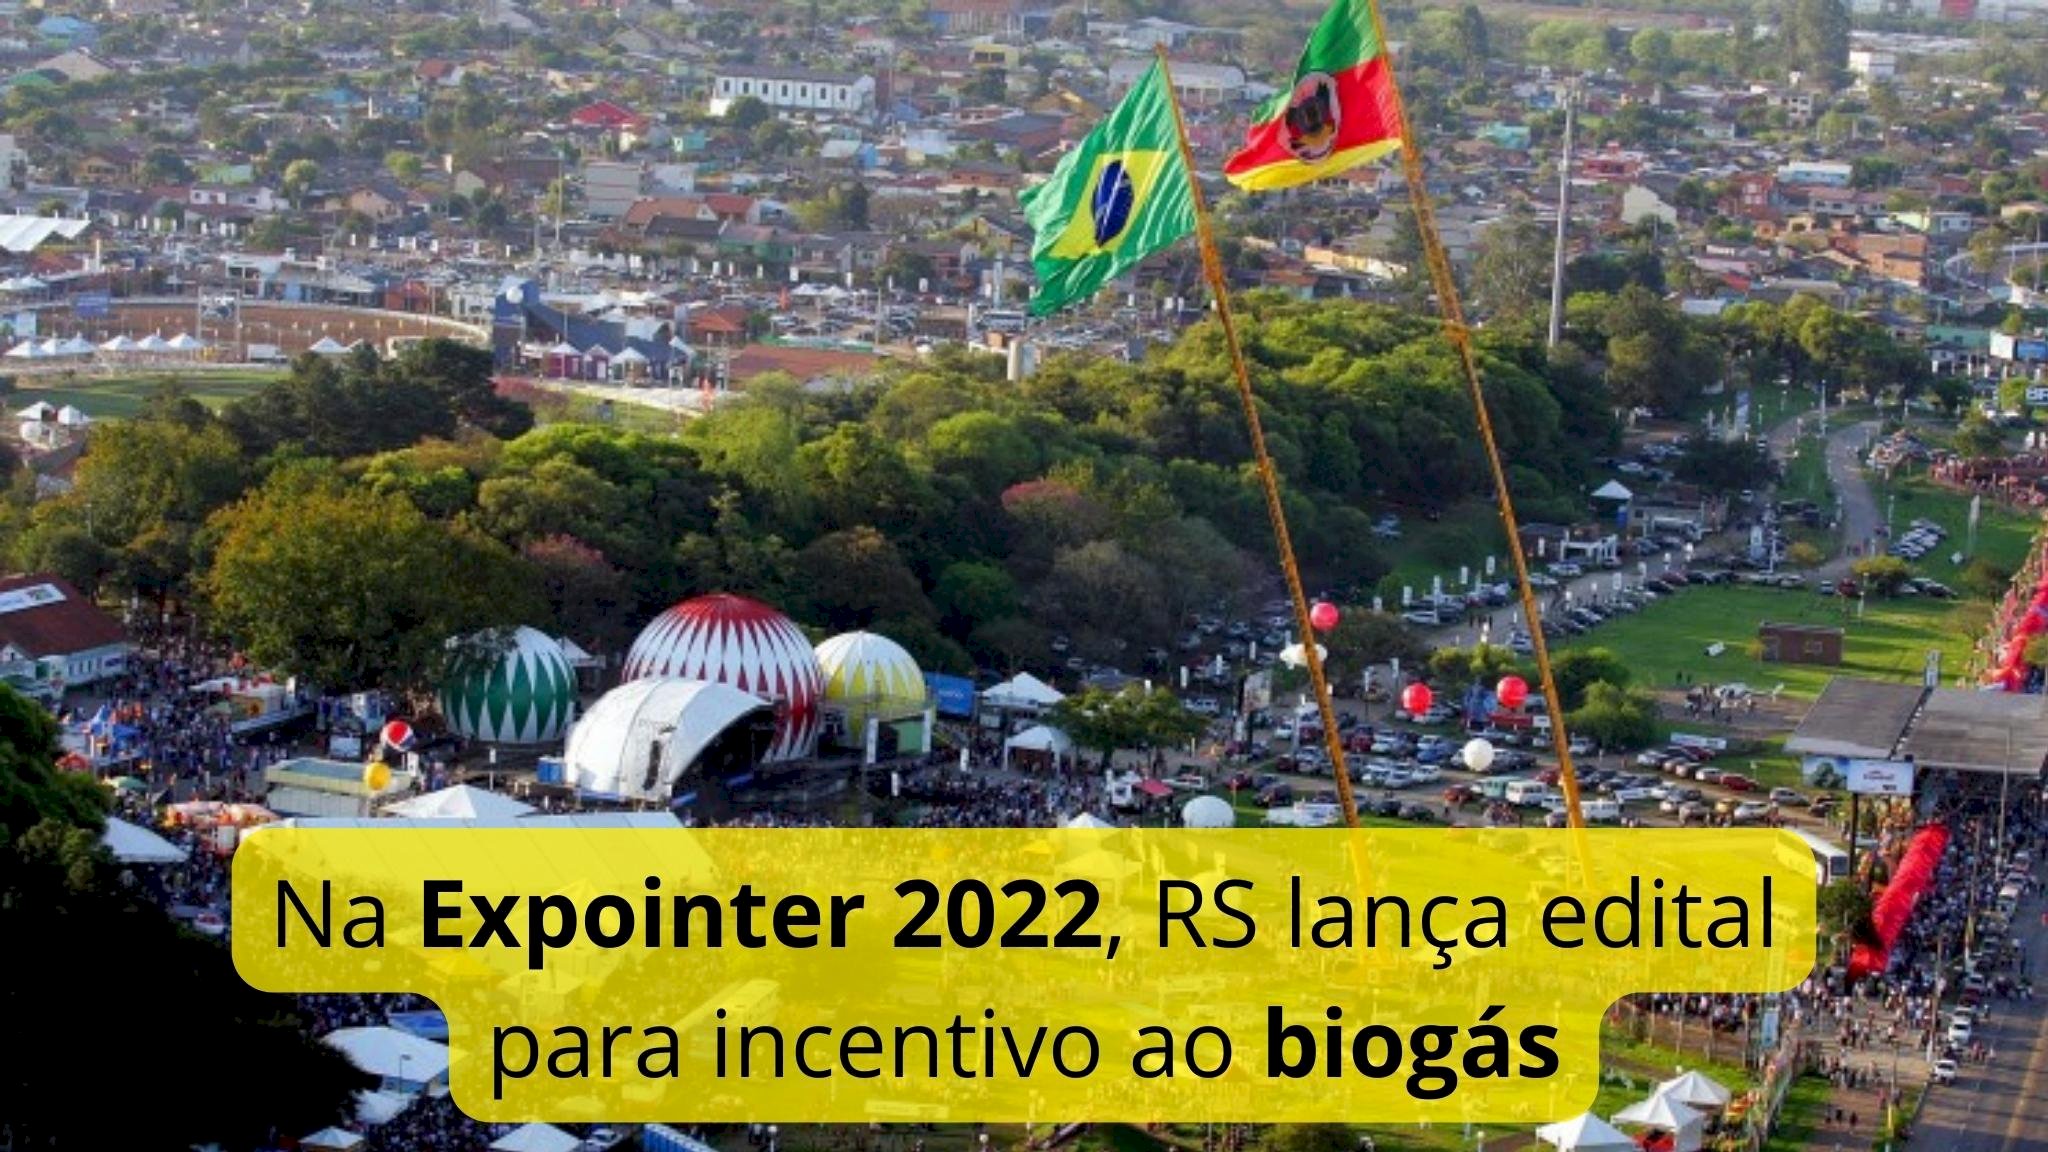 Na Expointer 2022, Governo do Estado do RS lança edital para incentivo ao biogás